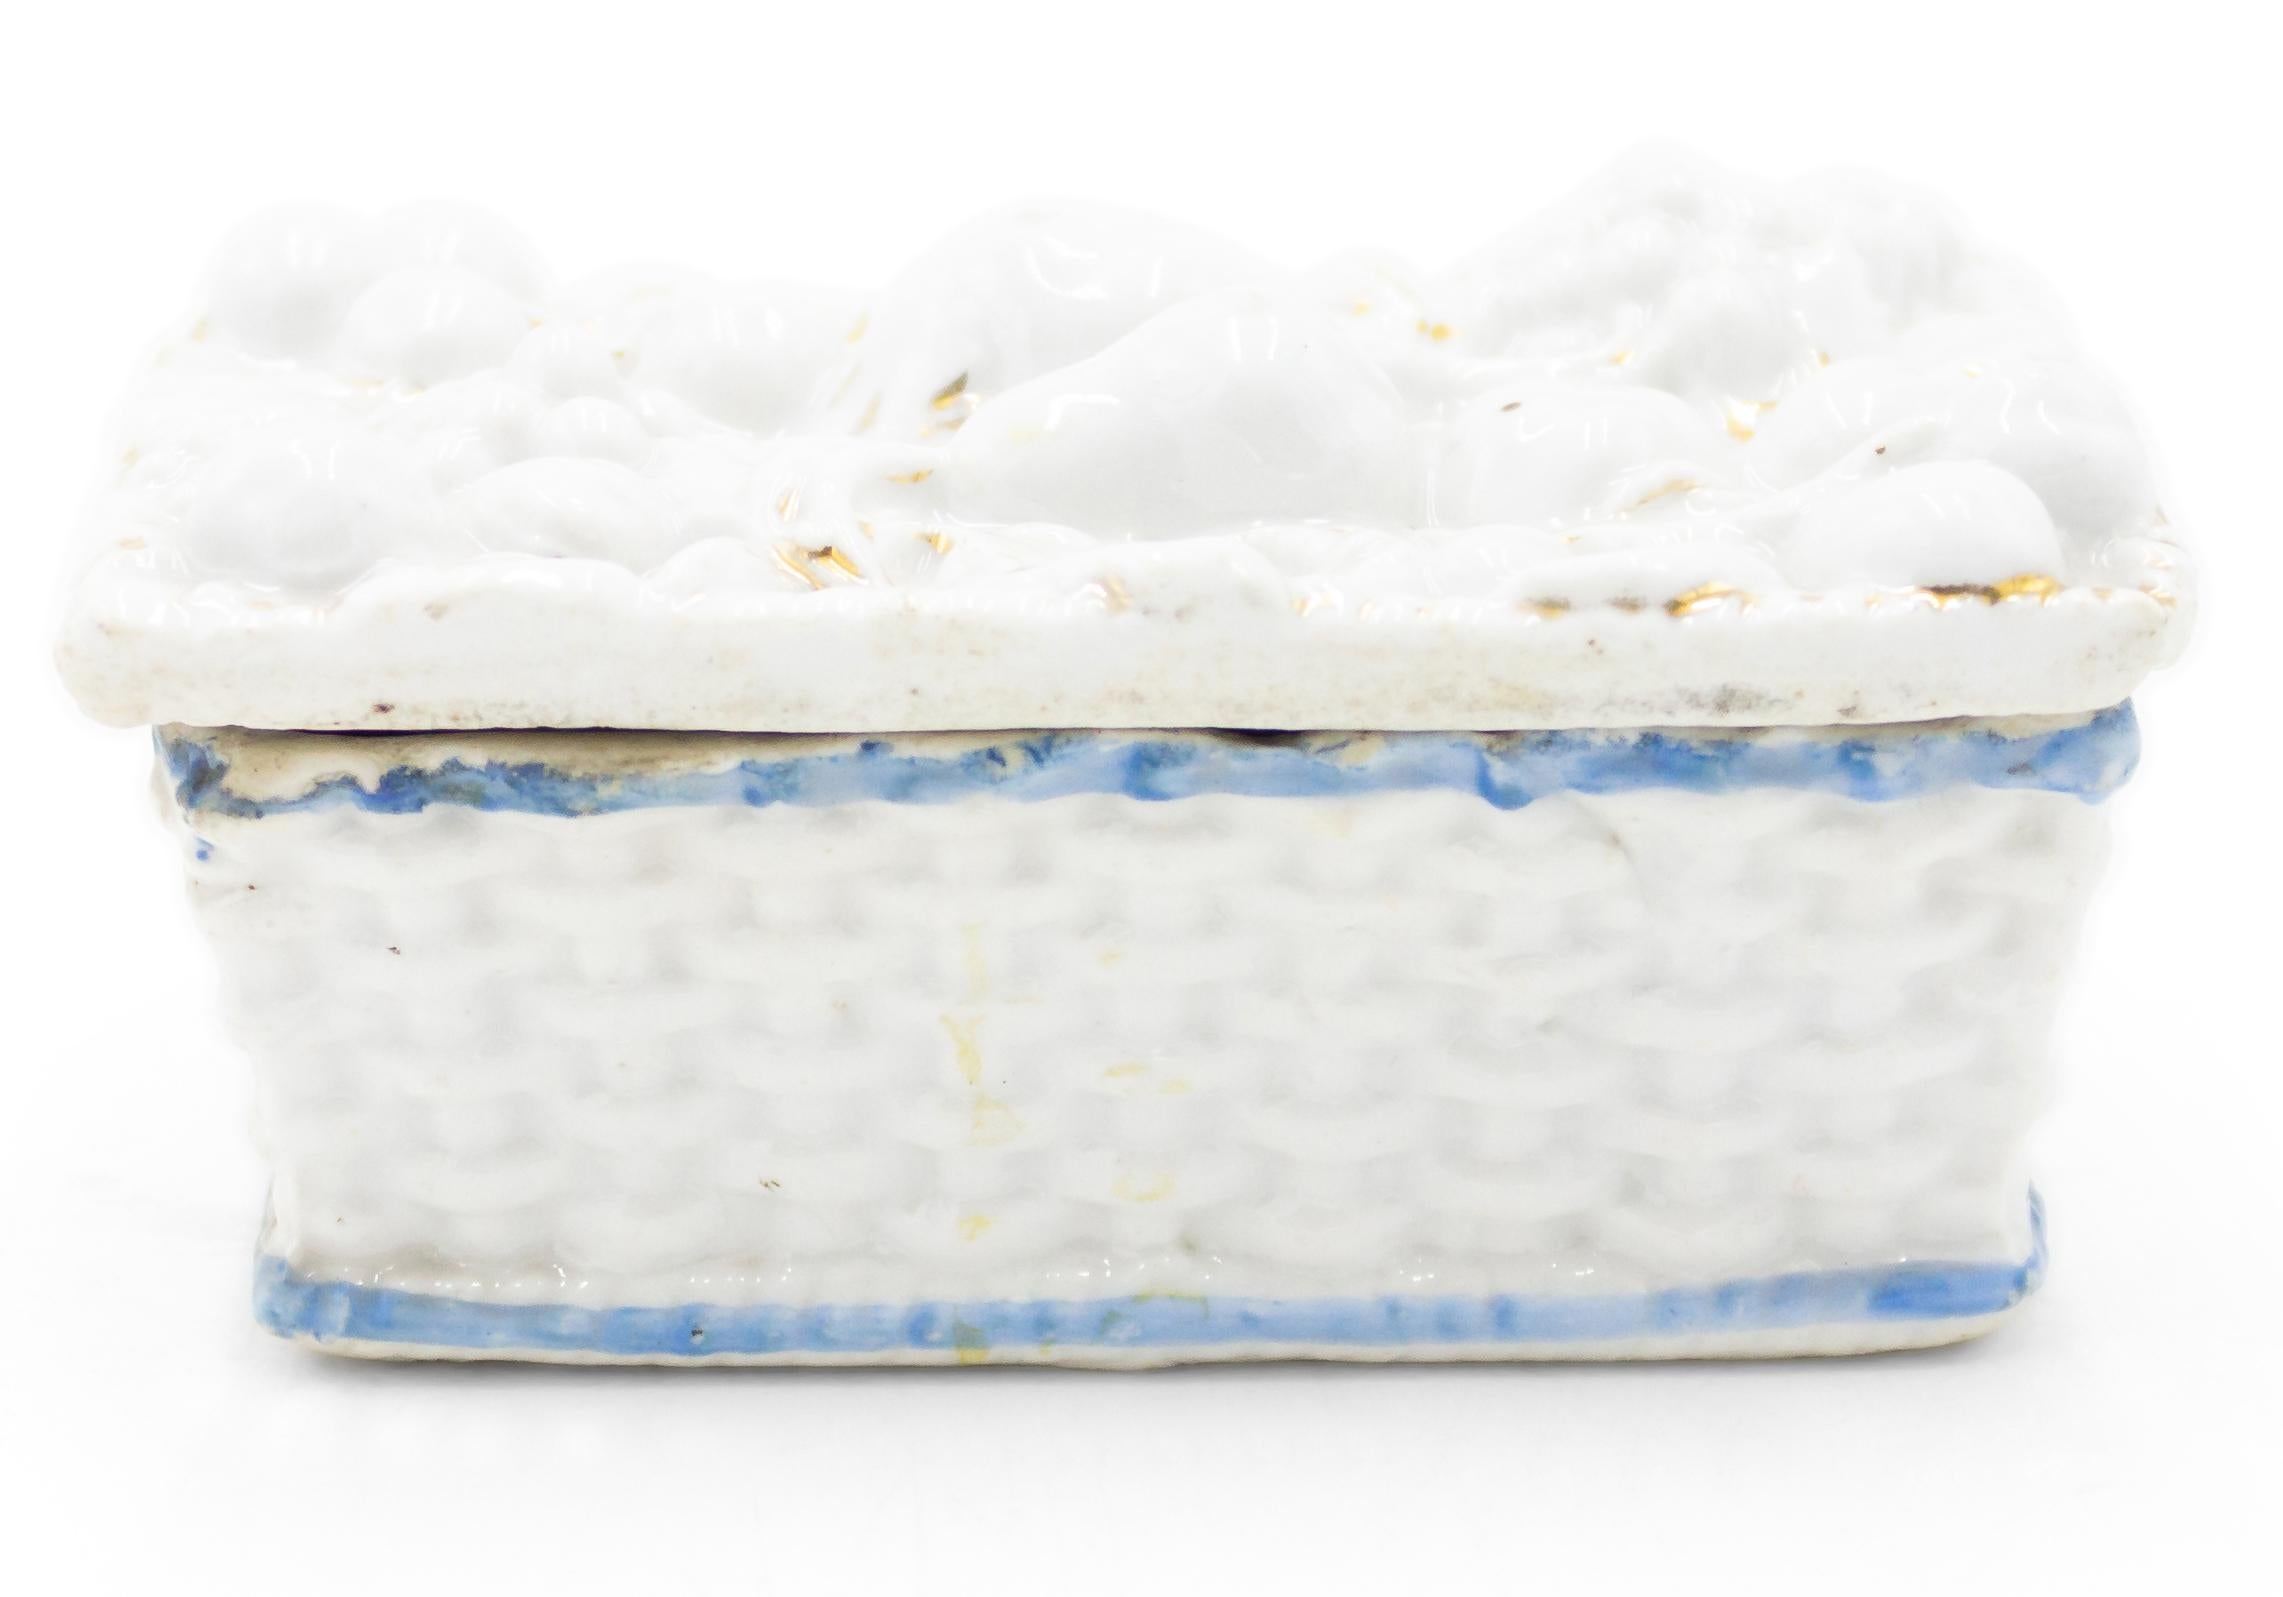 Petite boîte en porcelaine blanche de forme rectangulaire, de style anglais victorien, avec un motif tissé, une bordure bleue et un motif de fruits sur le dessus.

 